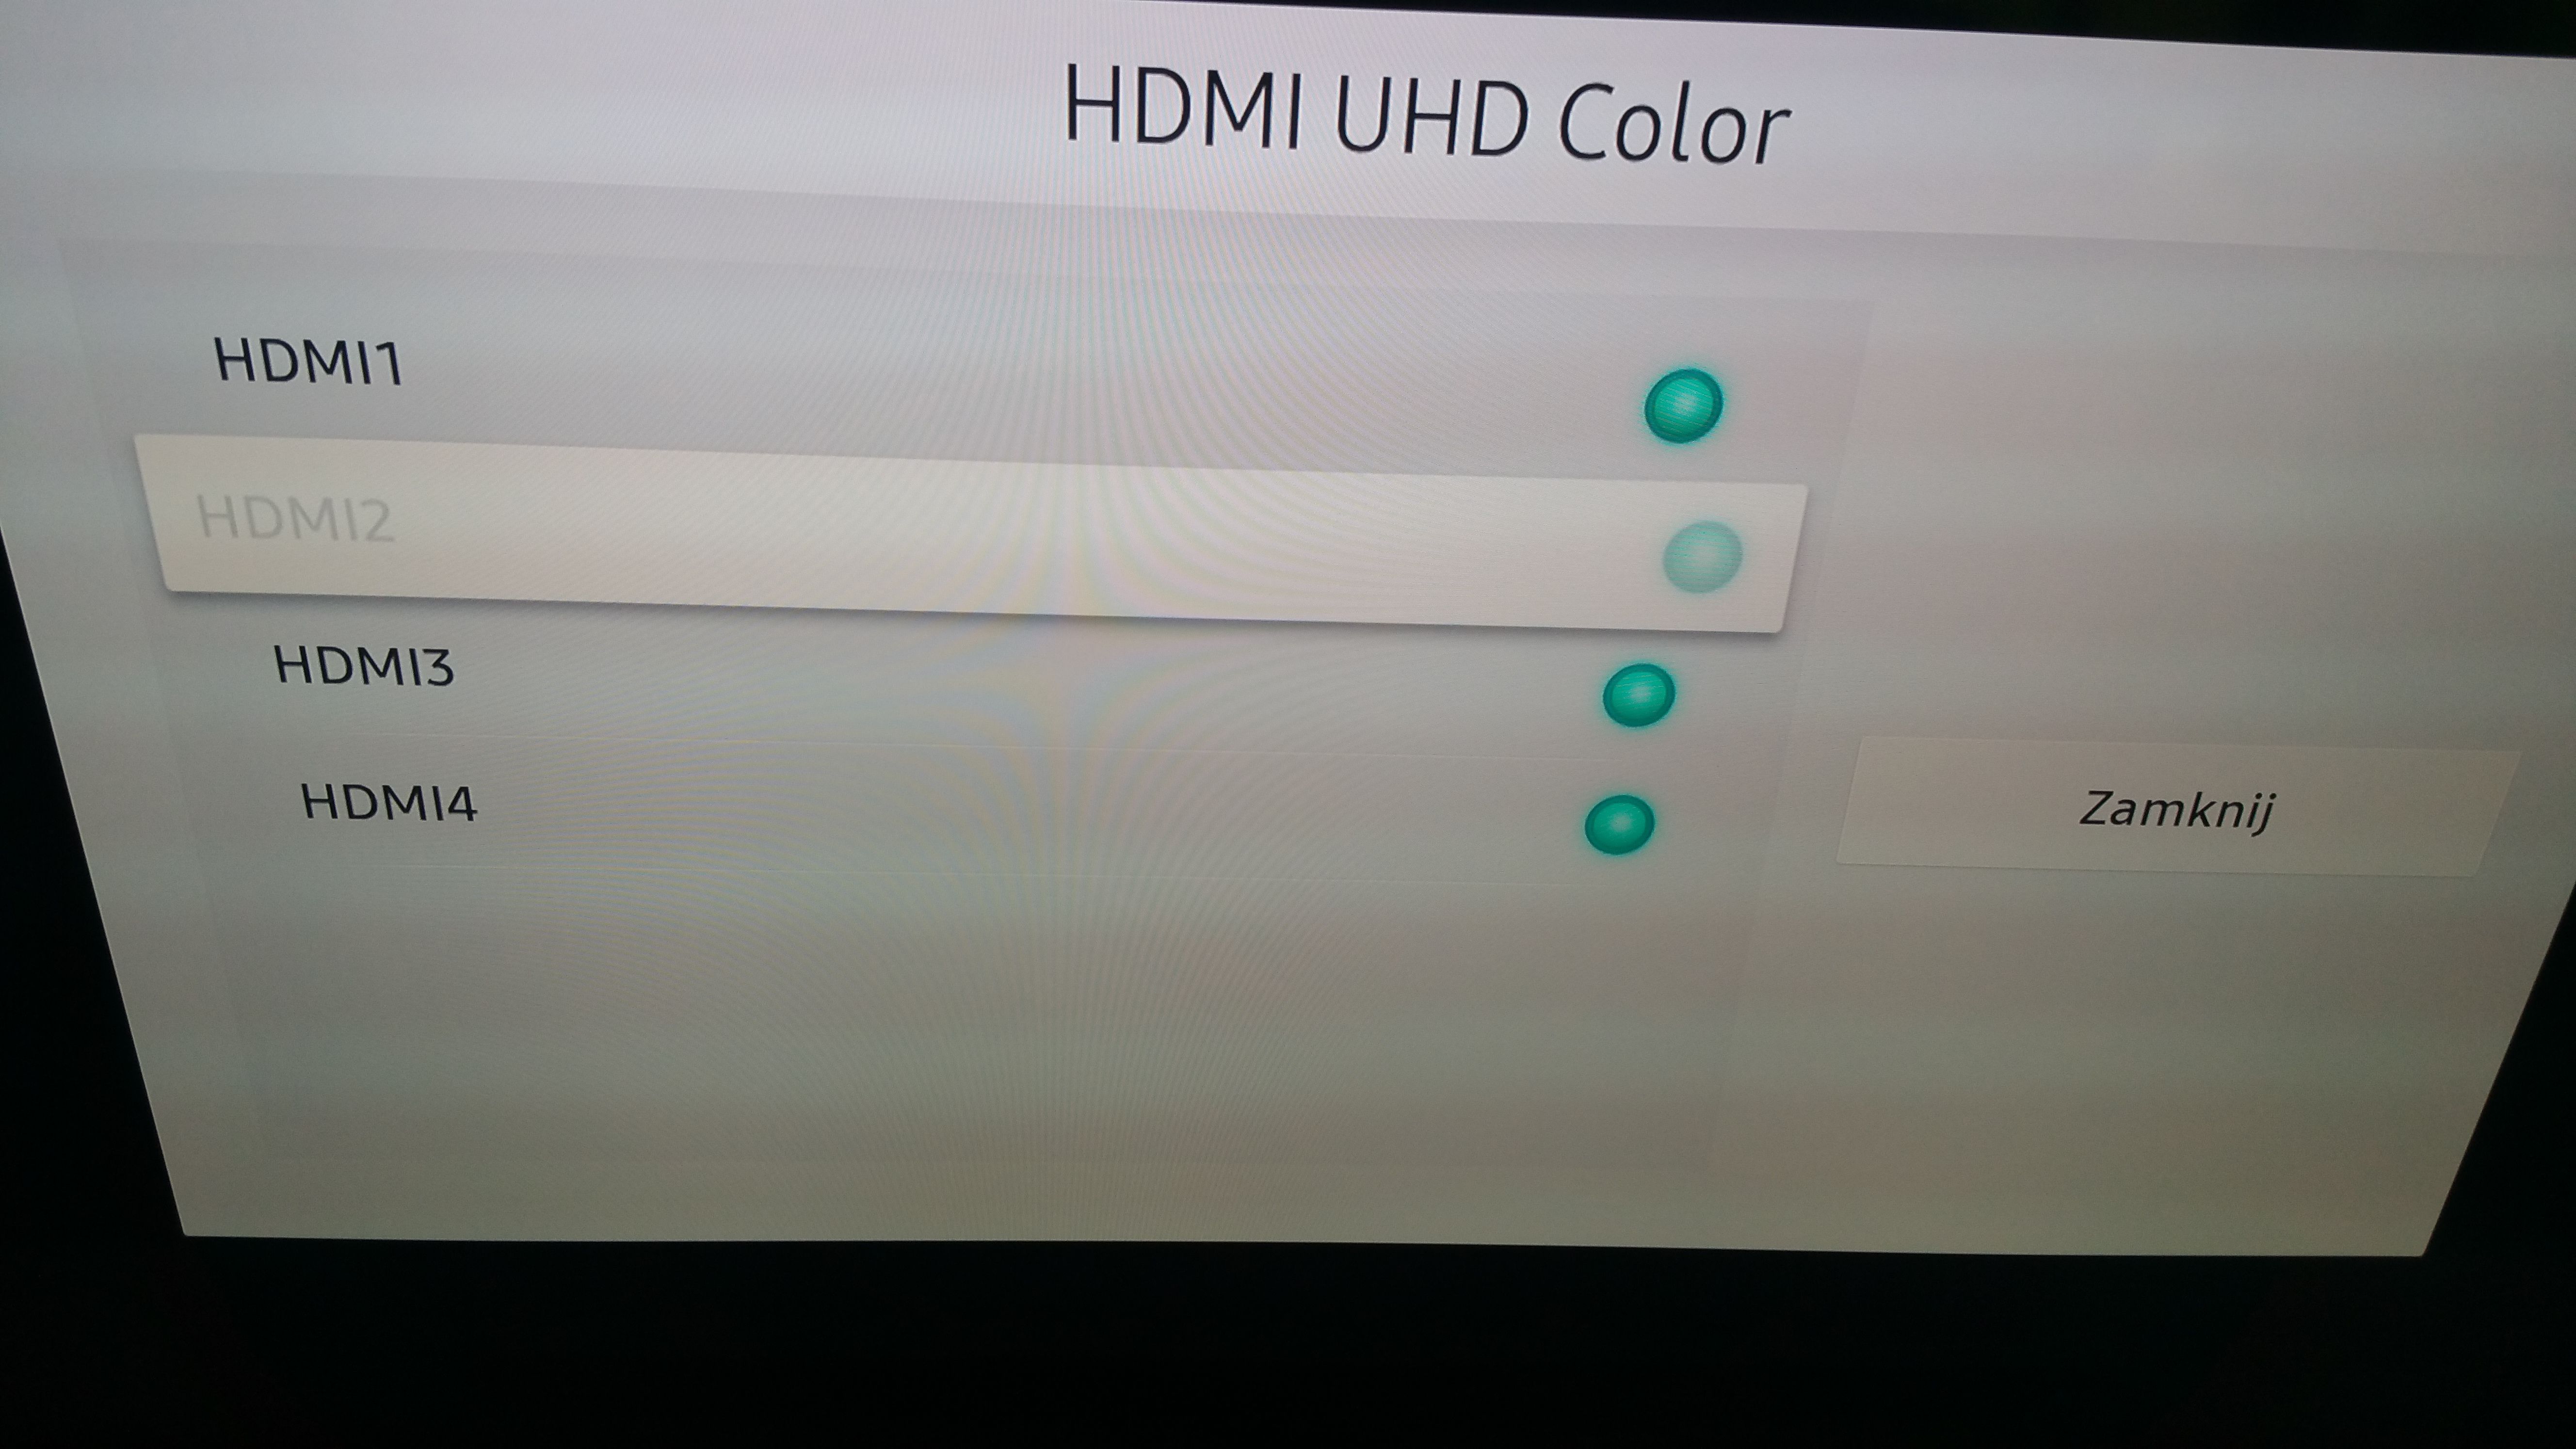 JAK TO JEST Z TYM HDMI UHD COLOR - Samsung Community